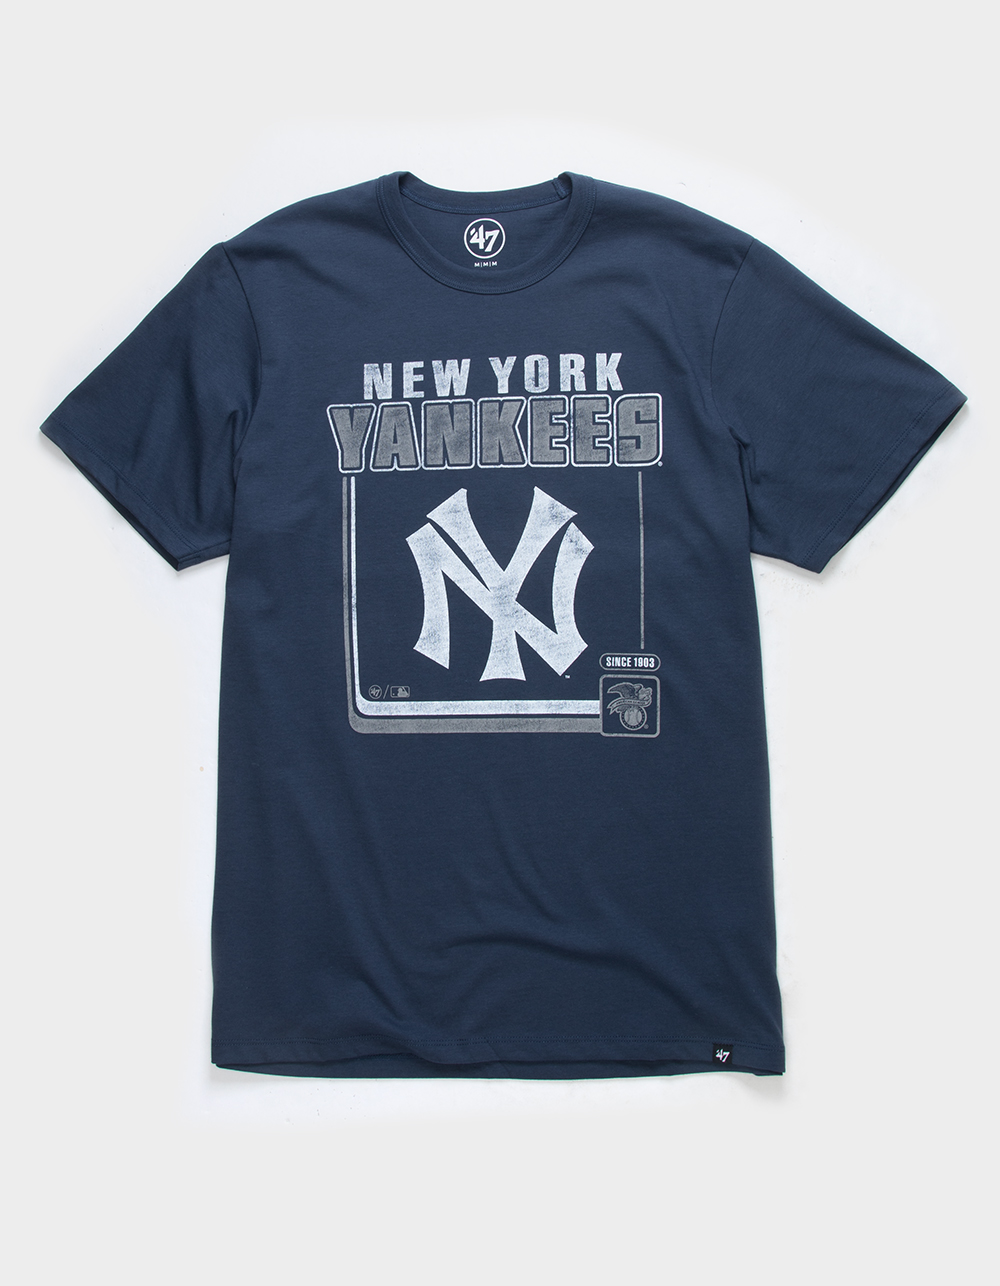 New York Yankees Navy and White 47 Brand T-Shirt